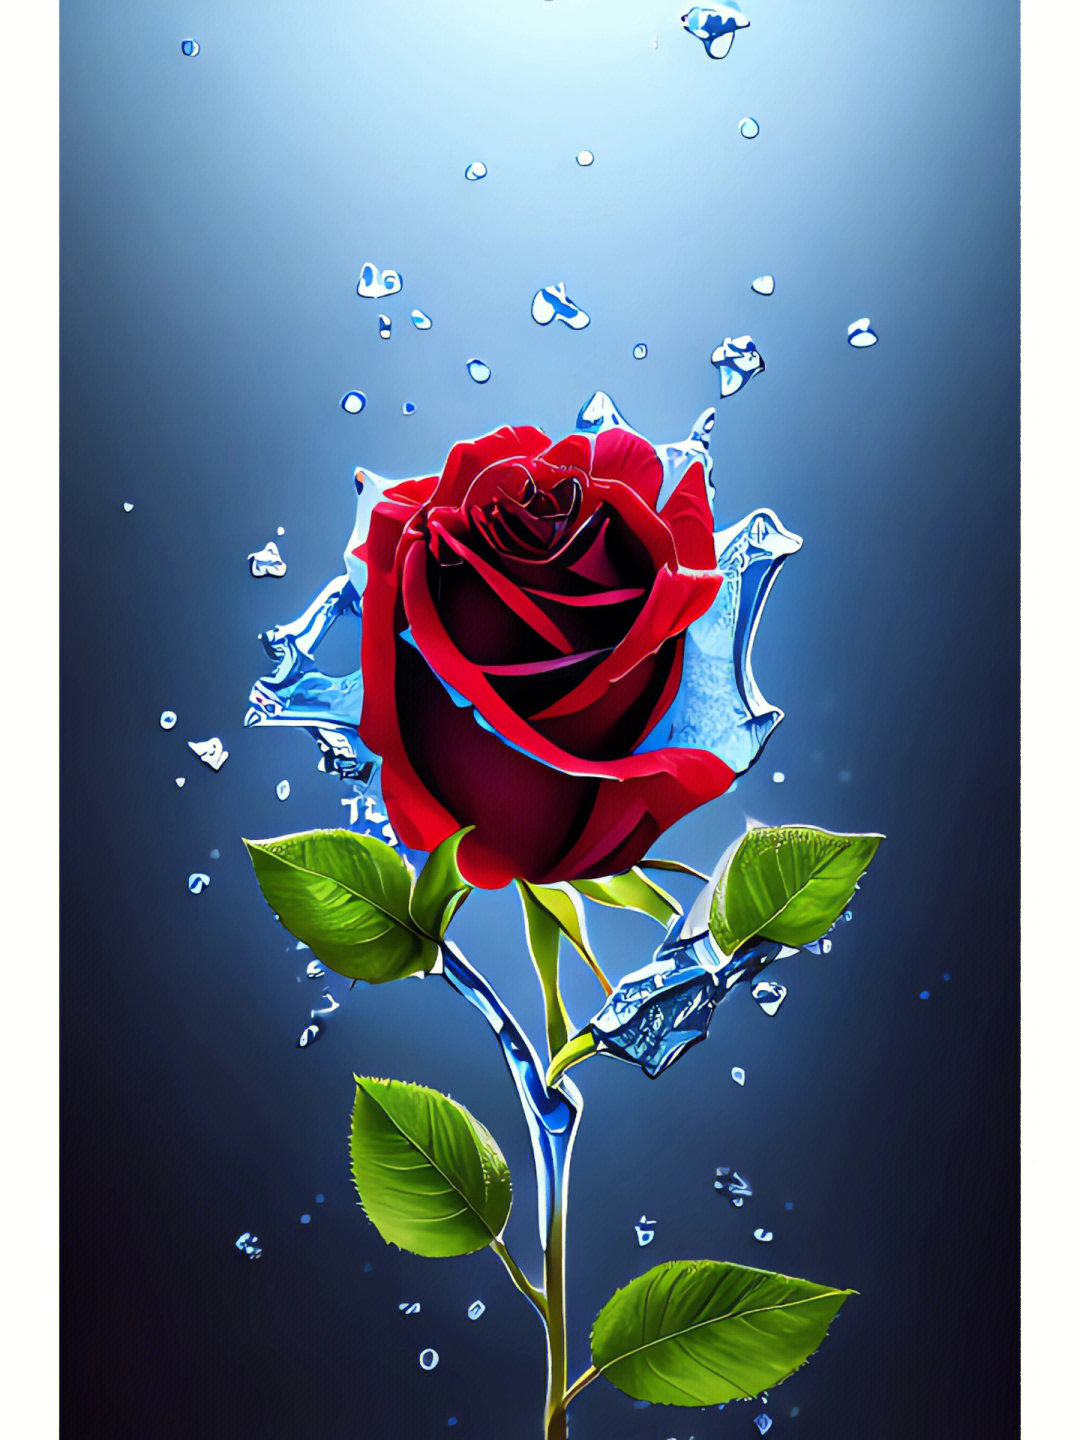 有一种花,叫红玫瑰,它的花语是:玫瑰是红的,紫罗兰是蓝的,糖是甜的